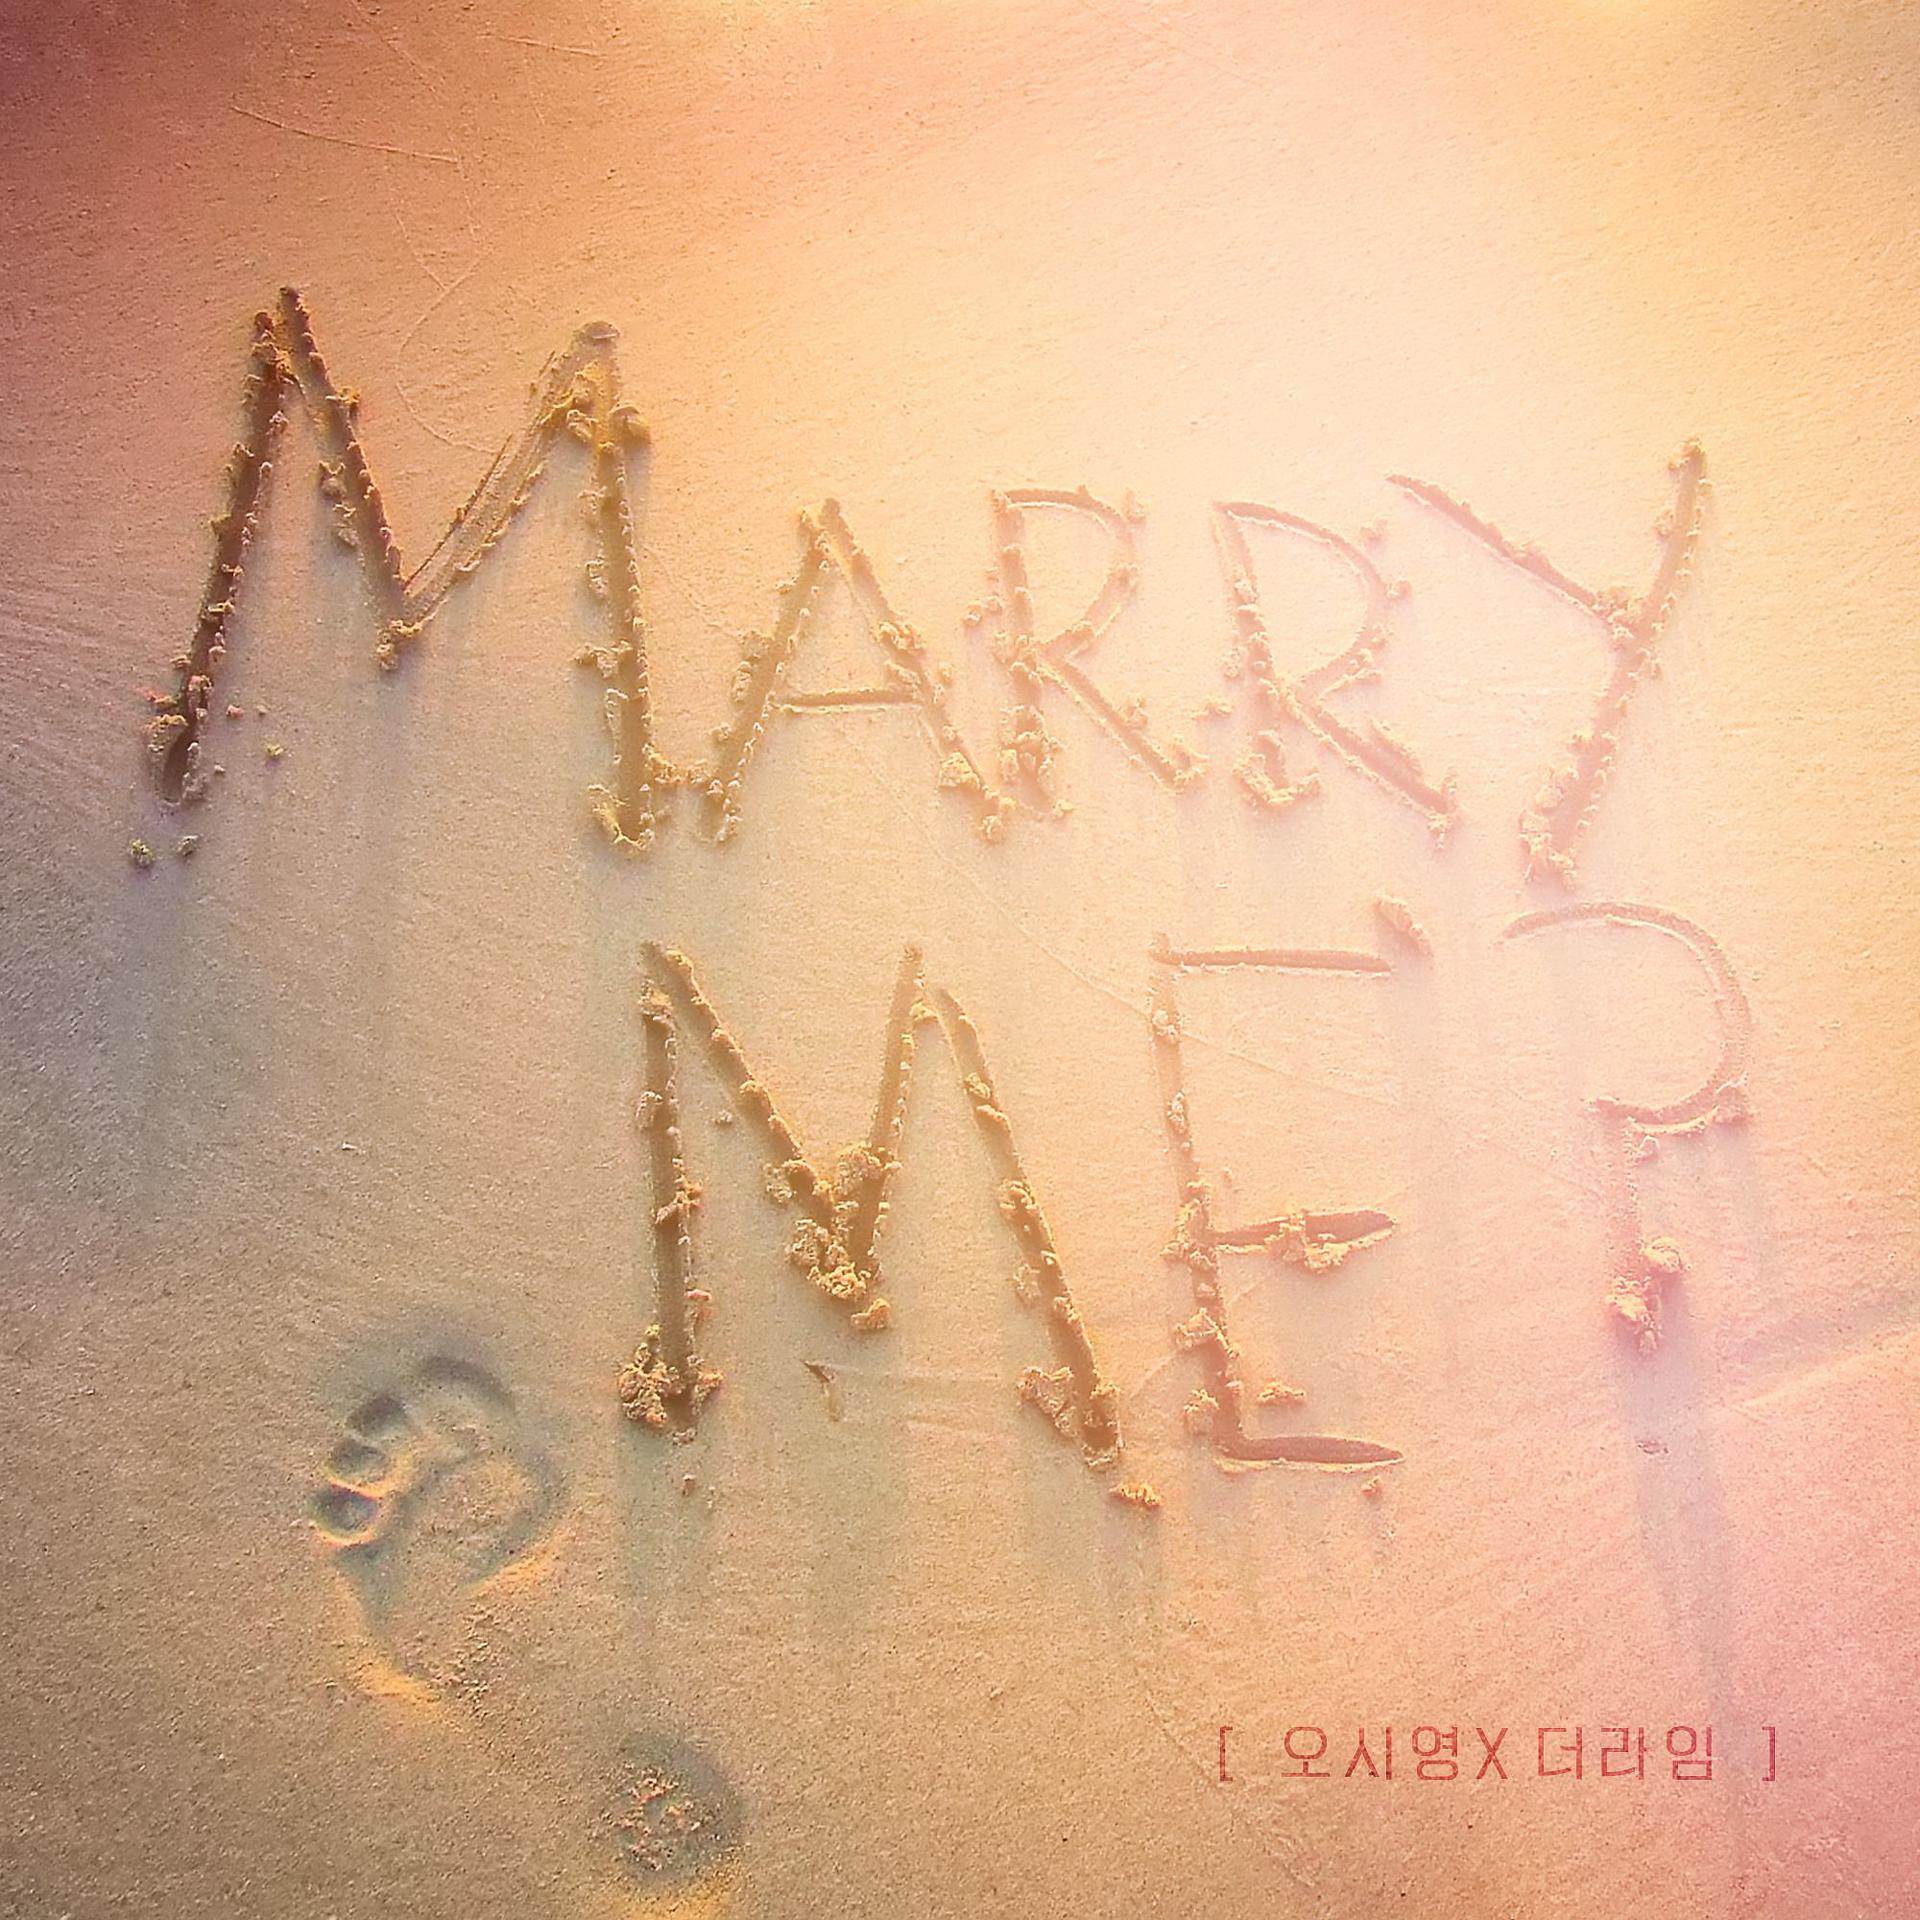 Постер альбома Marry Me